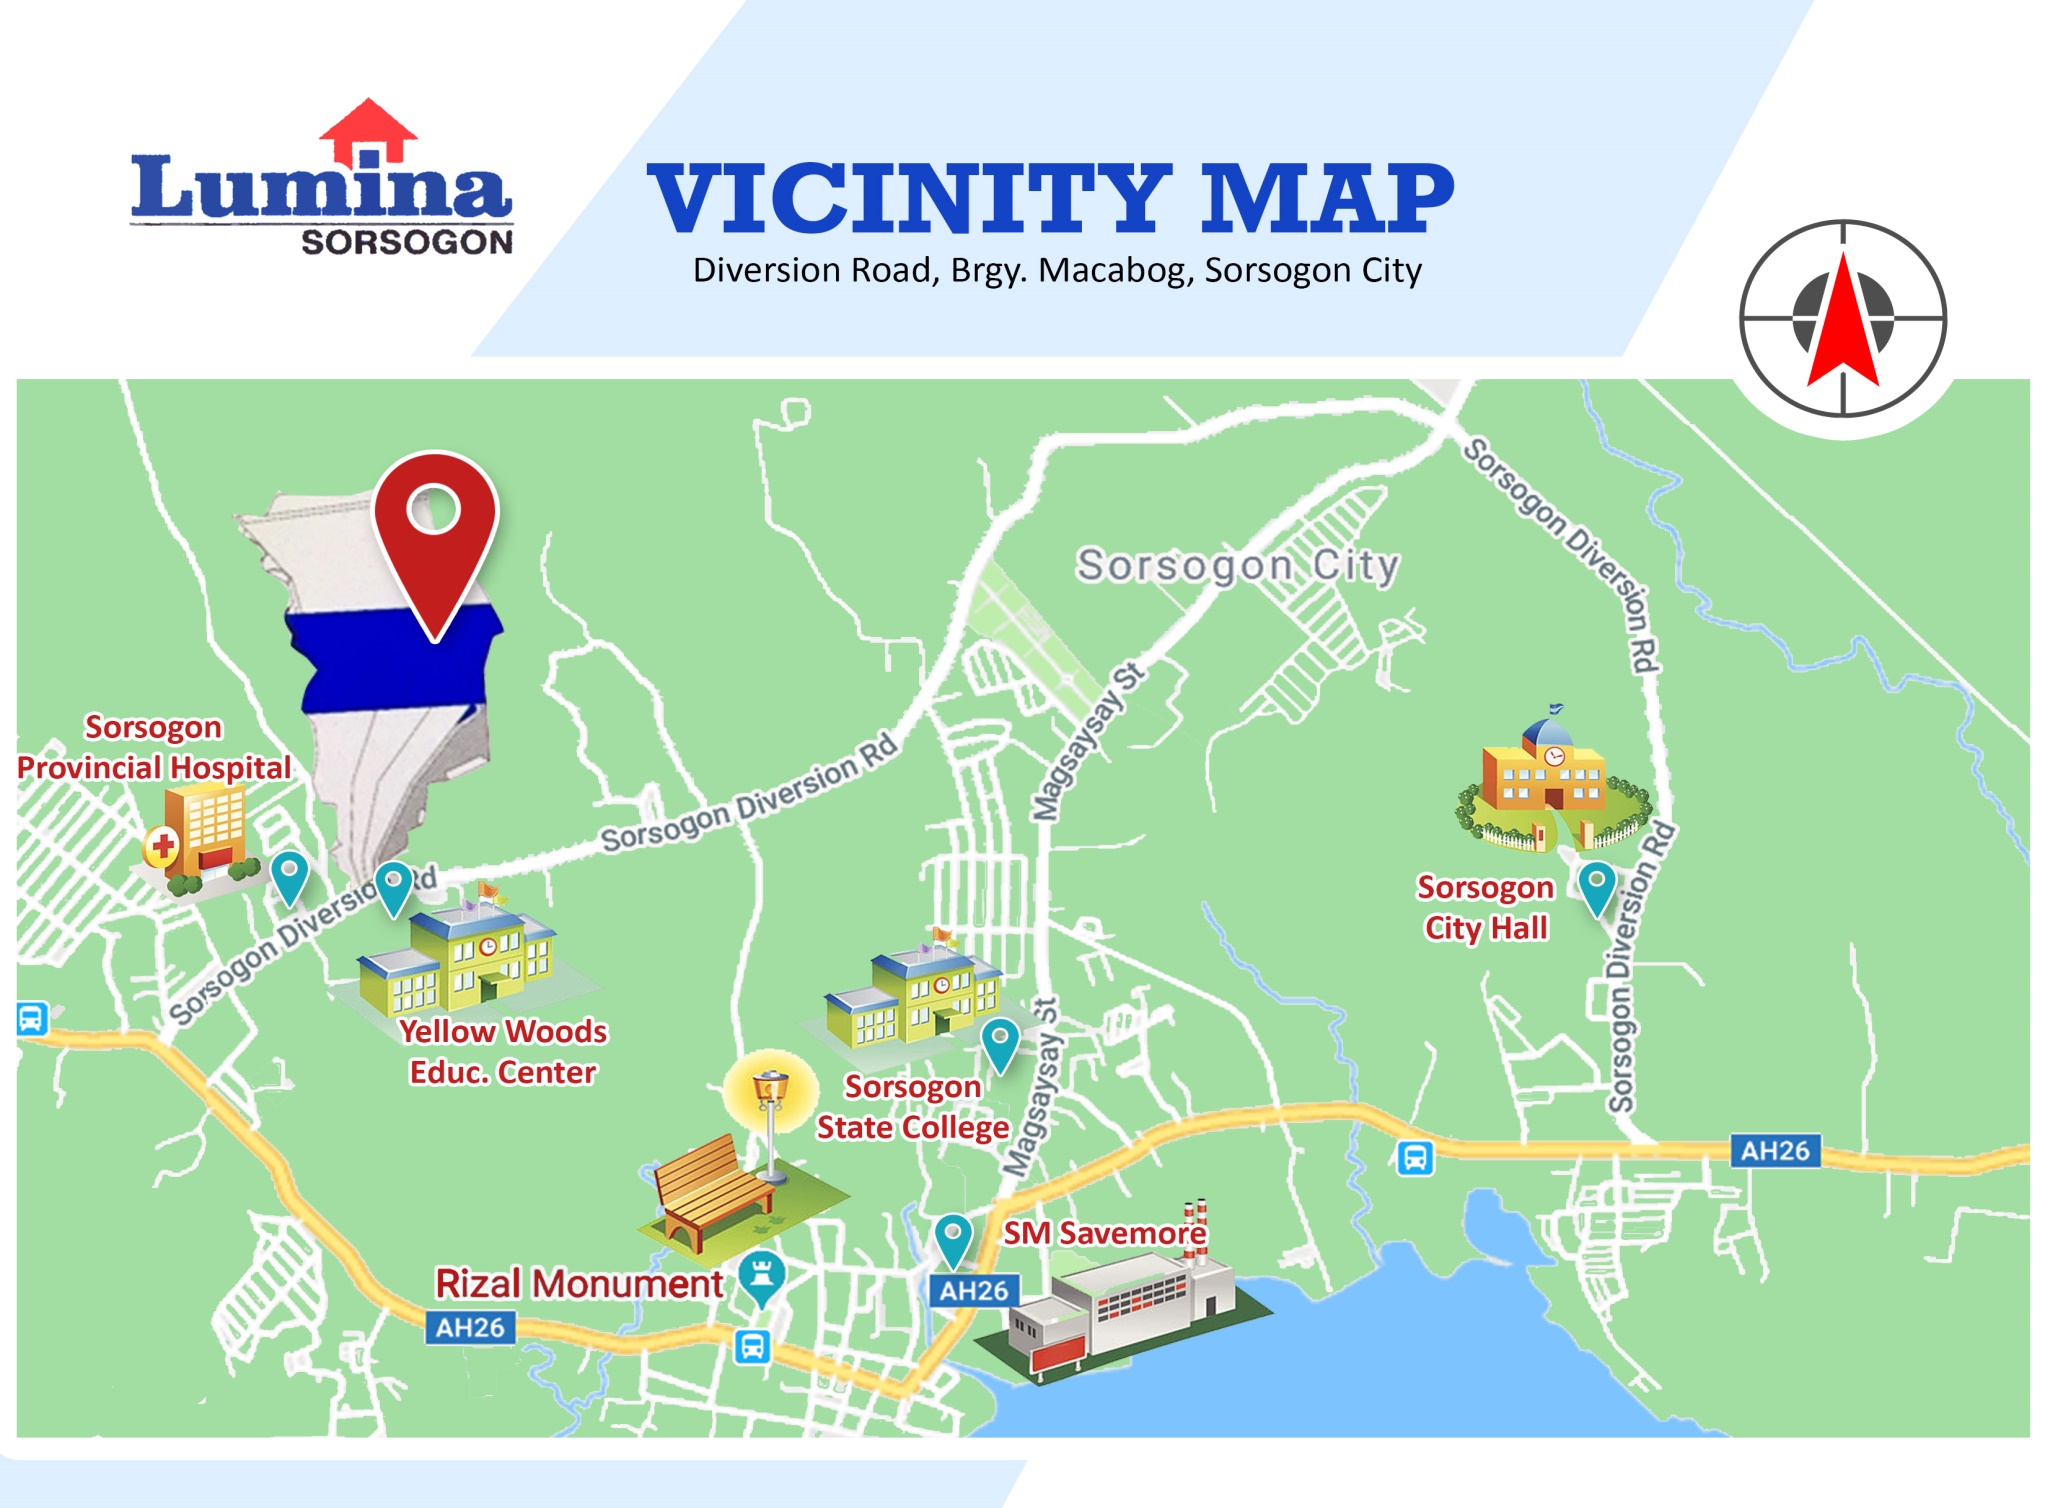 Vicinity-Map-1635999532.jpeg